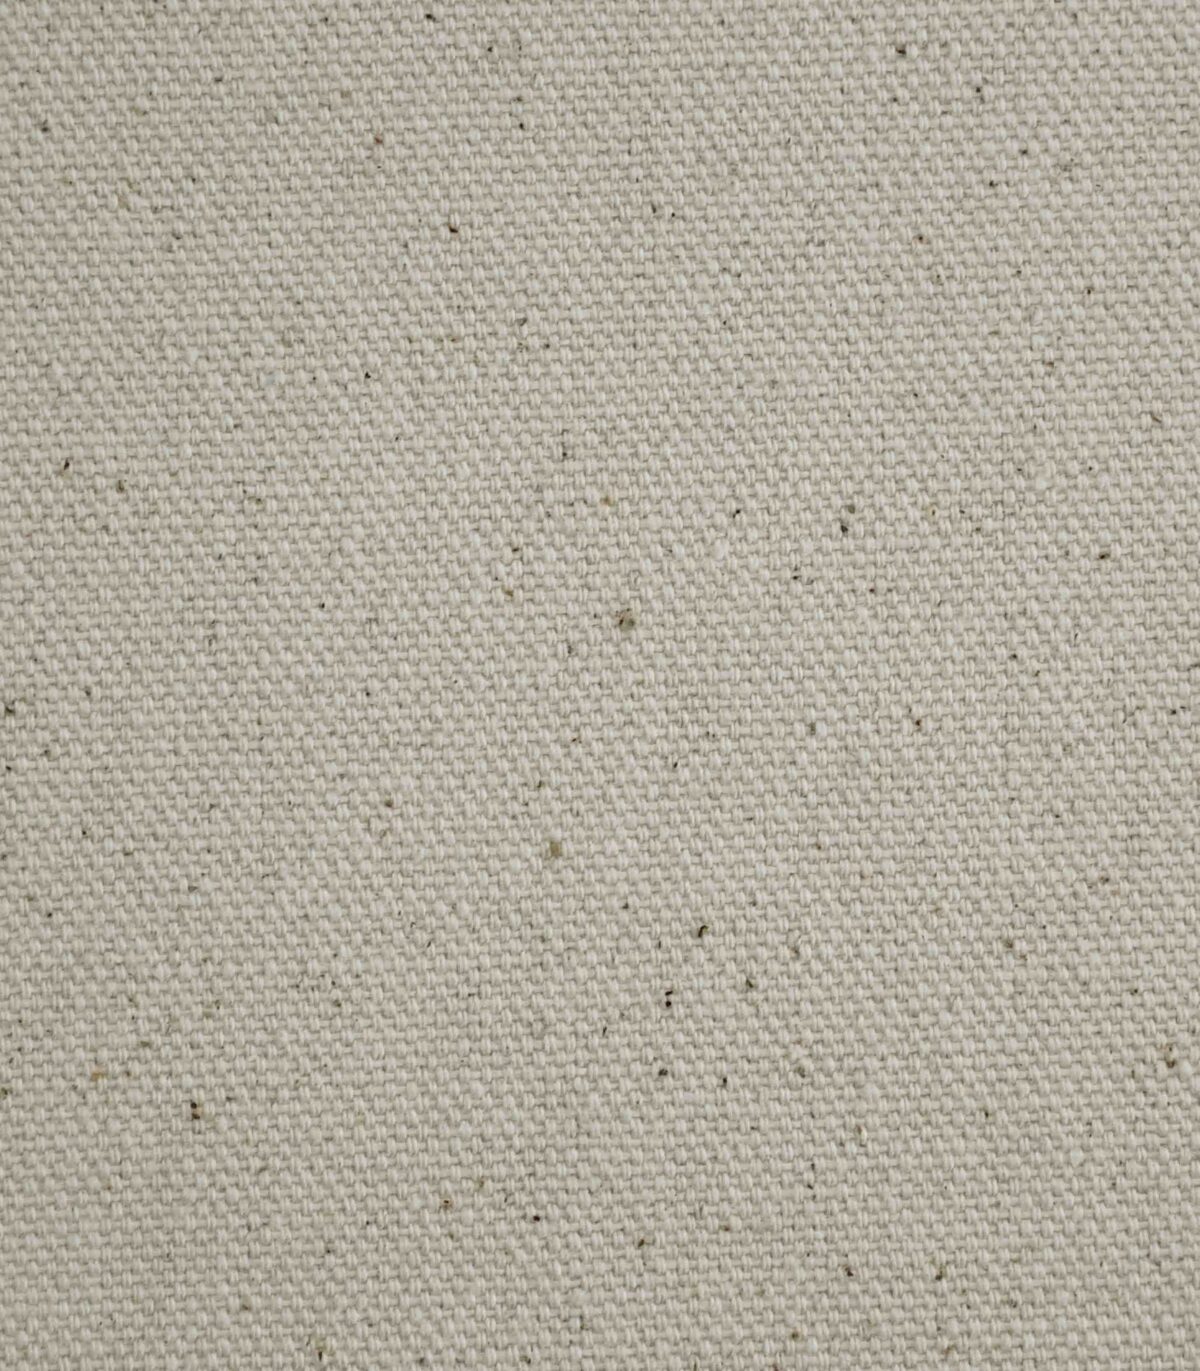 Natural De-sized Cotton Fabric